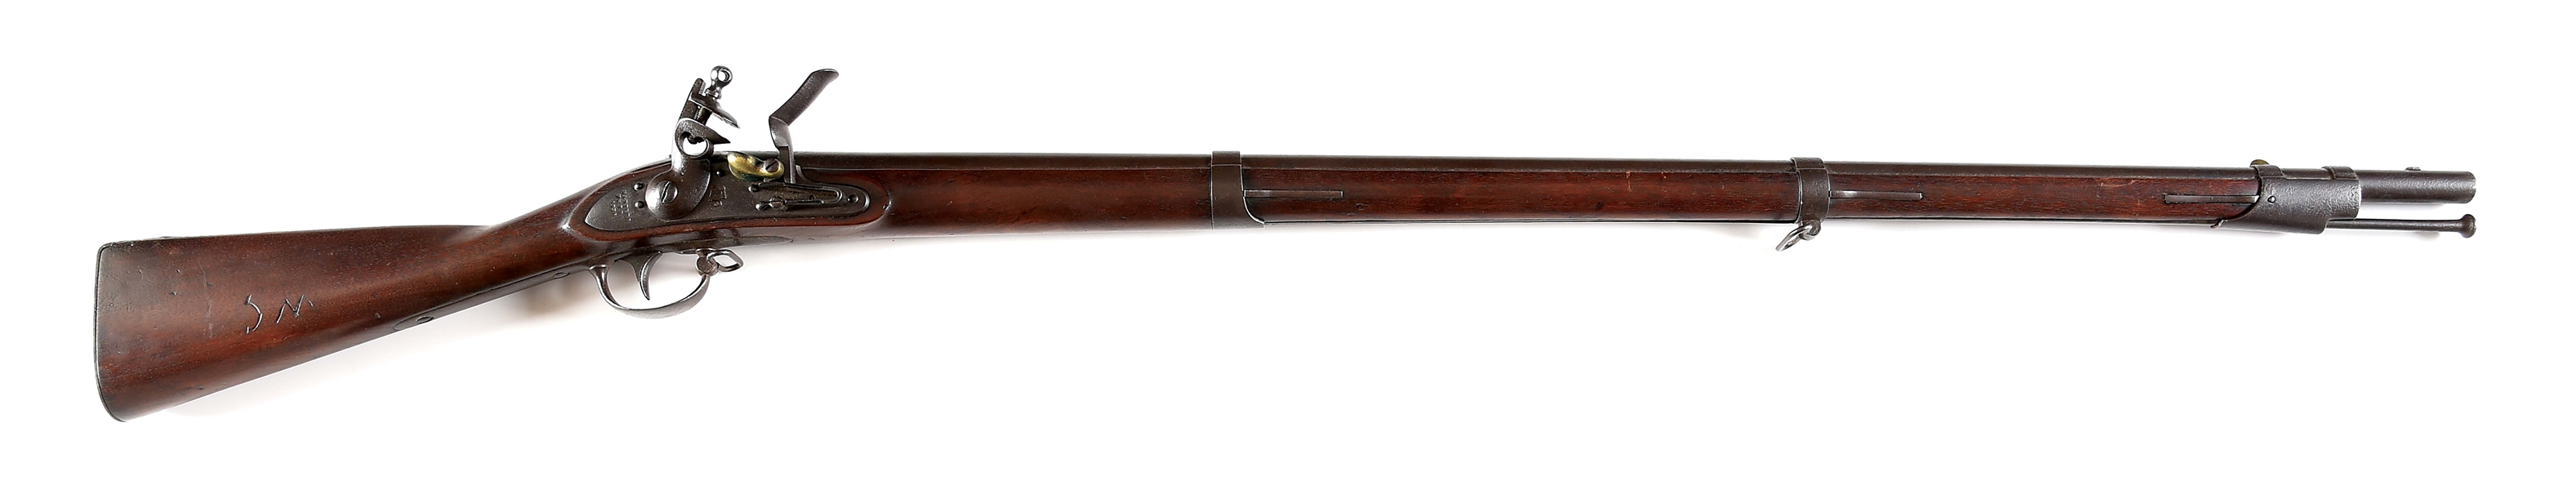 (A) HARPERS FERRY M1822/28 FLINTLOCK MUSKET DATED 1838 IN ORIGINAL FLINT.